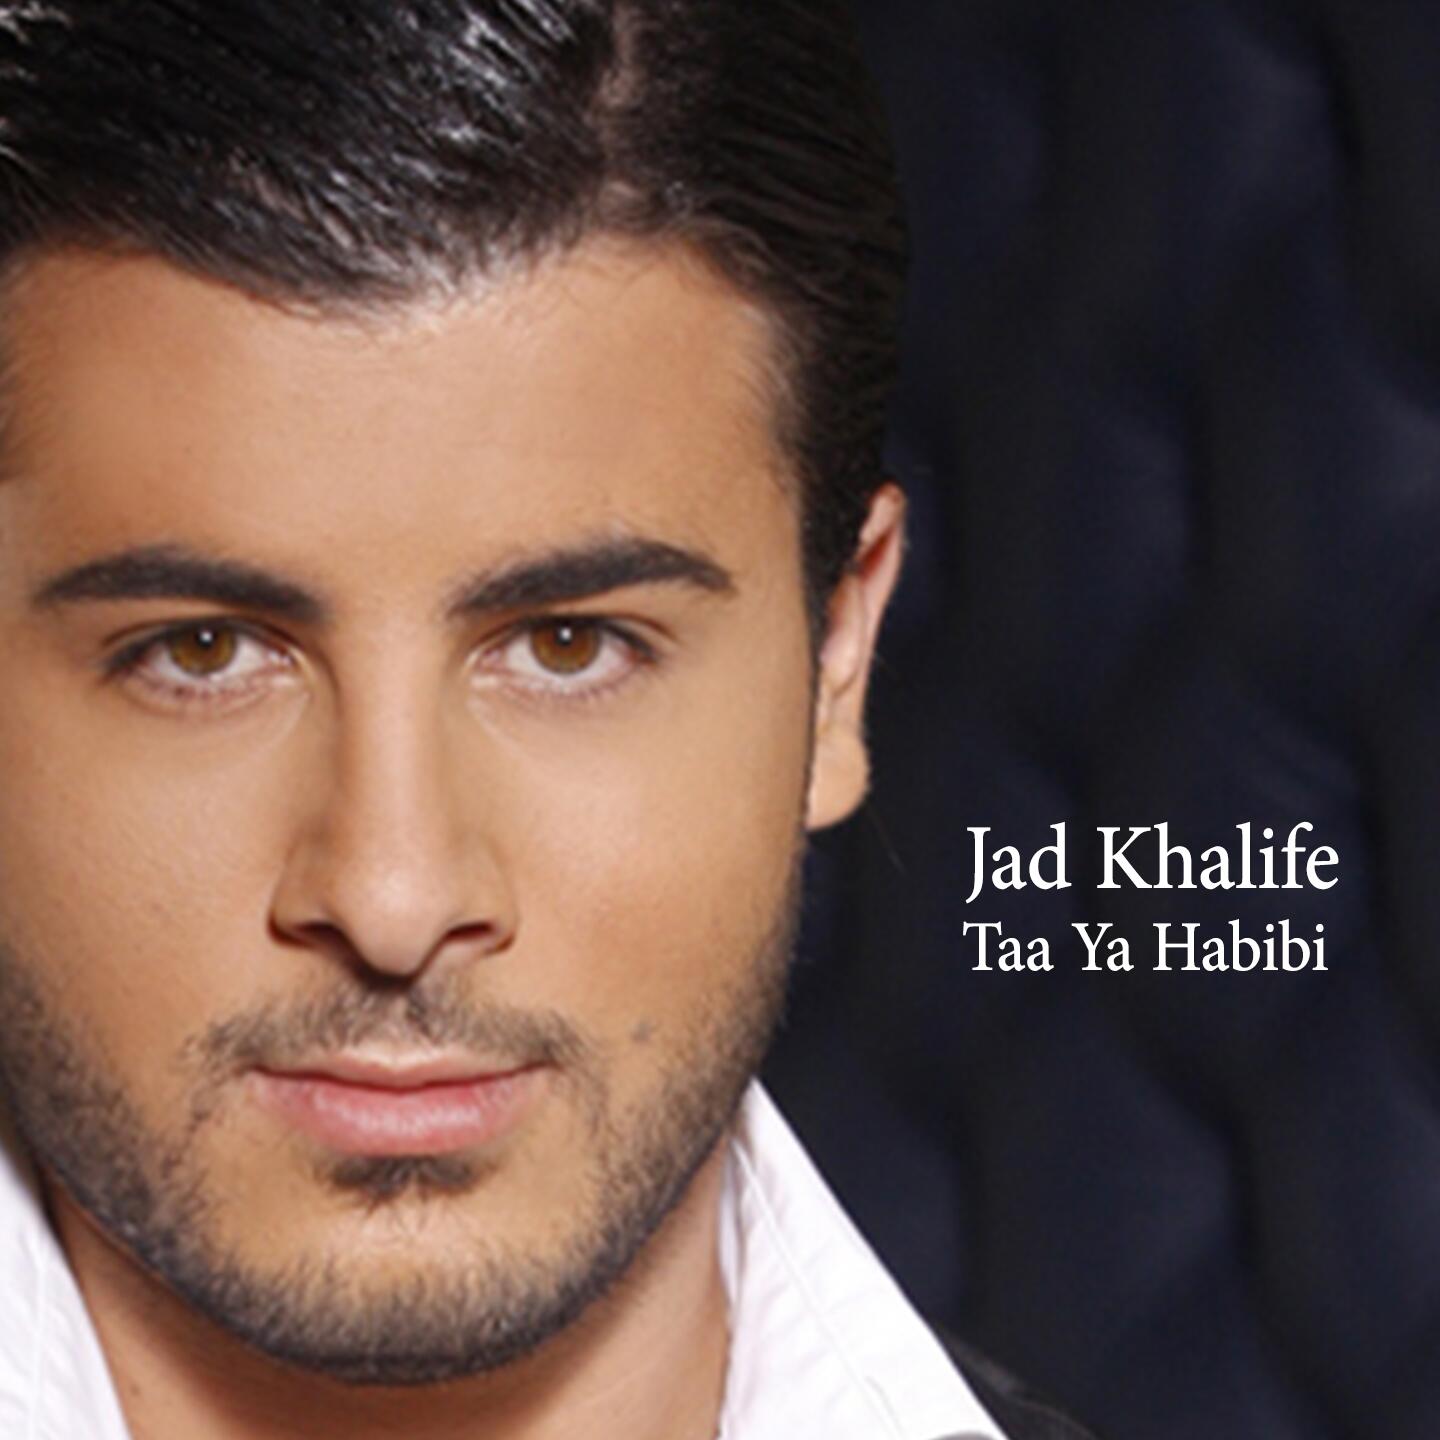 Ya habibi el. Saad певец Египетский. Египетские Певцы популярные. Известный арабский певец. Египетские Певцы мужчины.